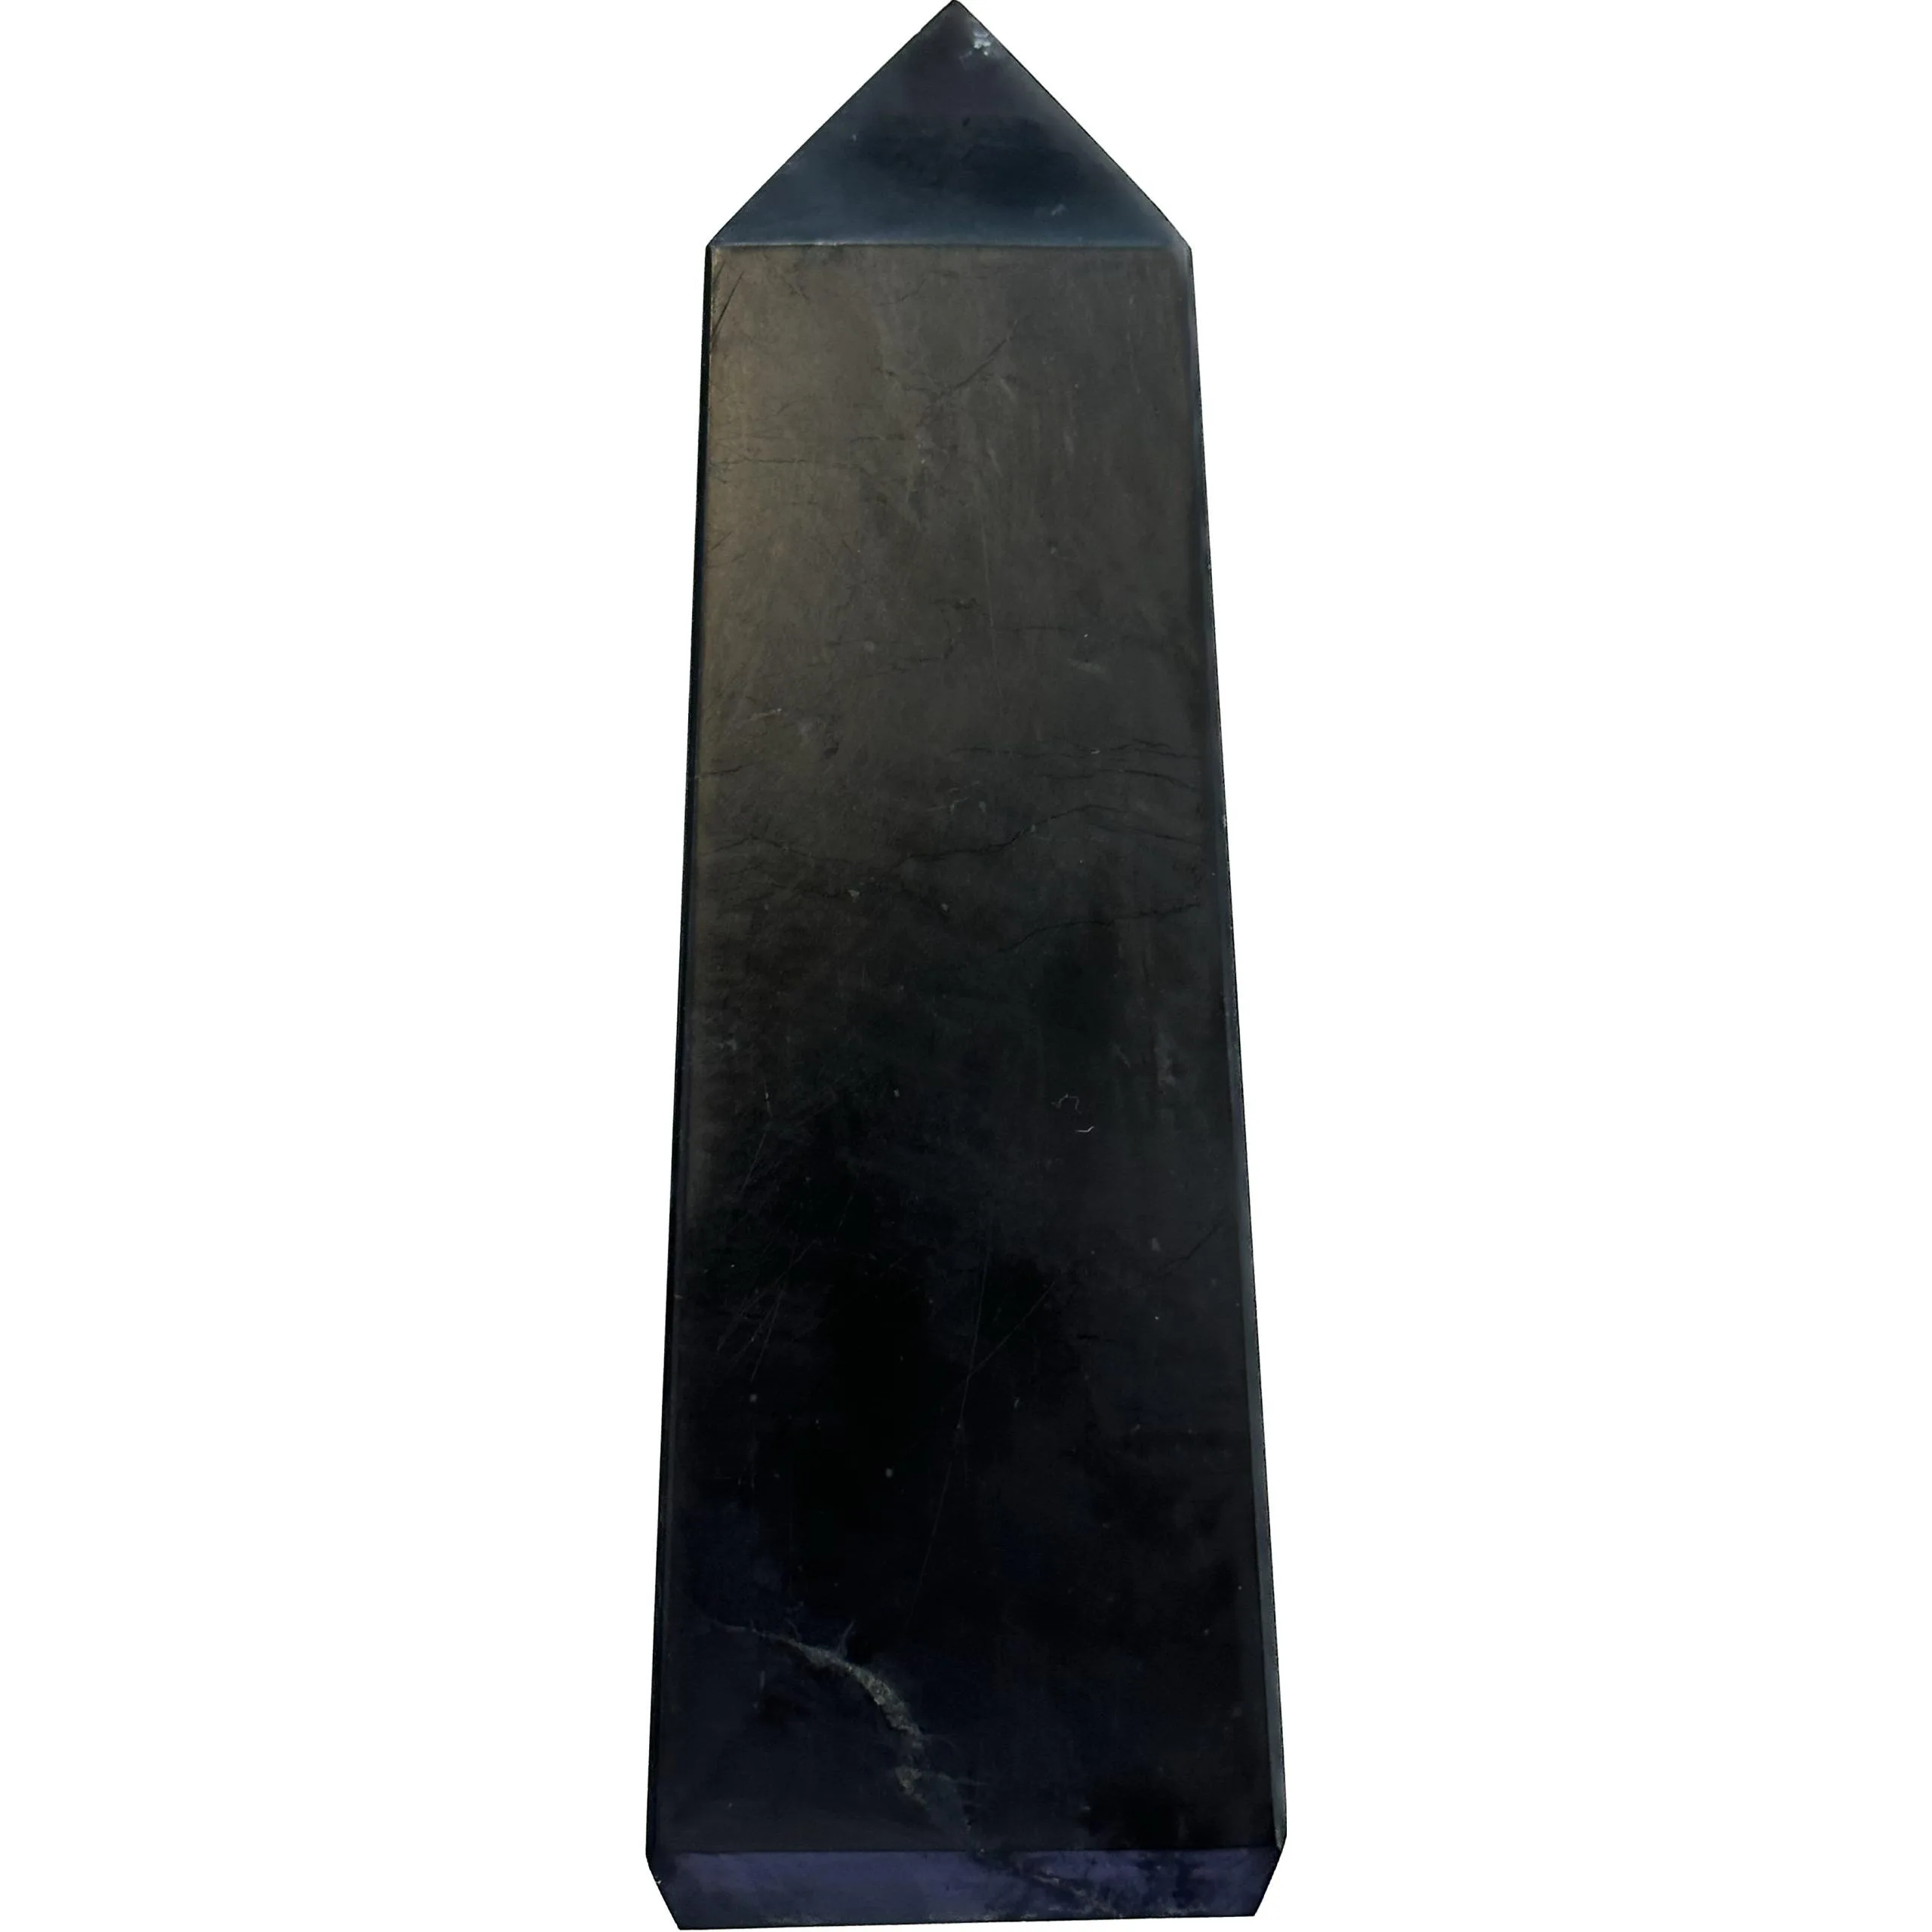 Obelisk – Shunghite- The Grounding stone Prehistoric Online